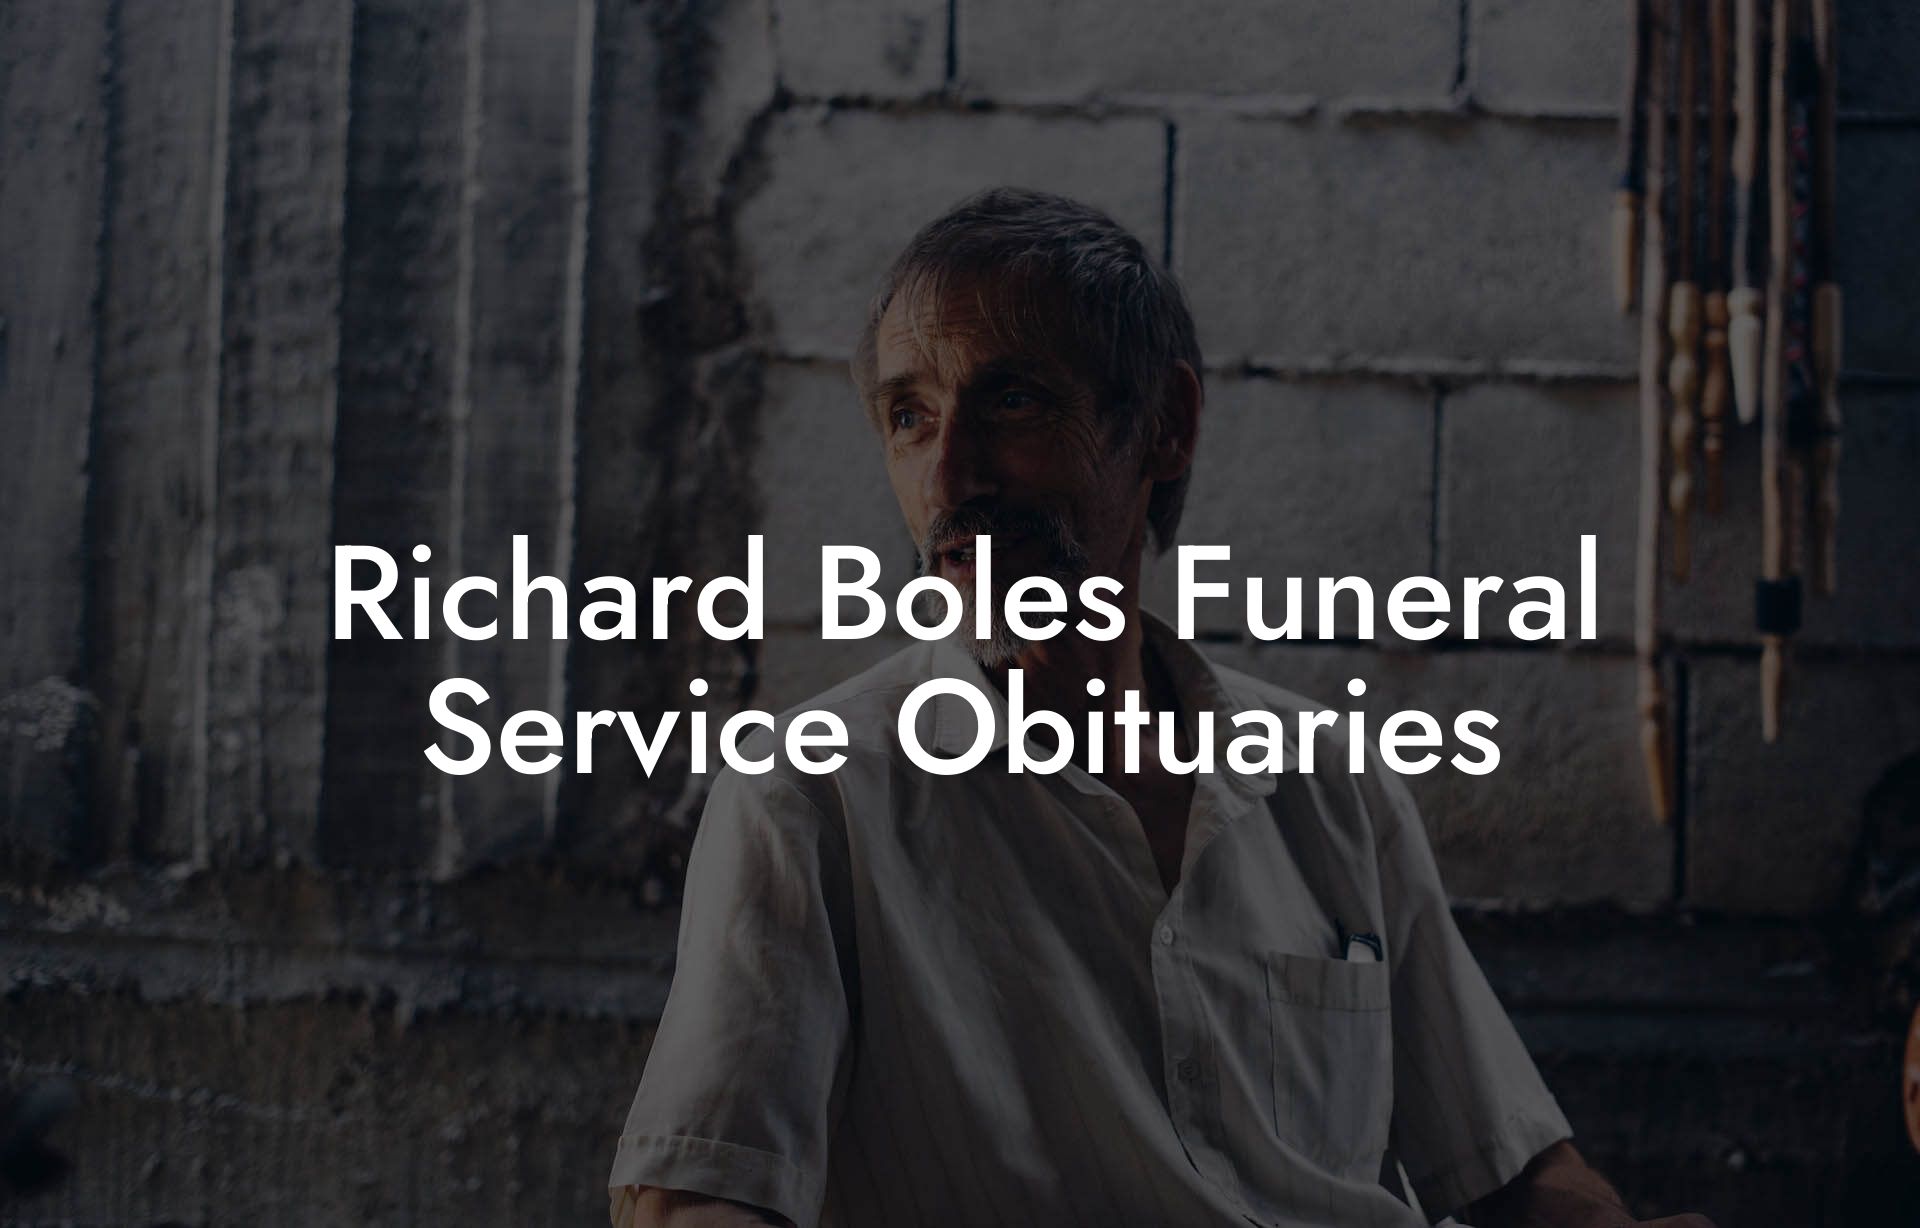 Richard Boles Funeral Service Obituaries